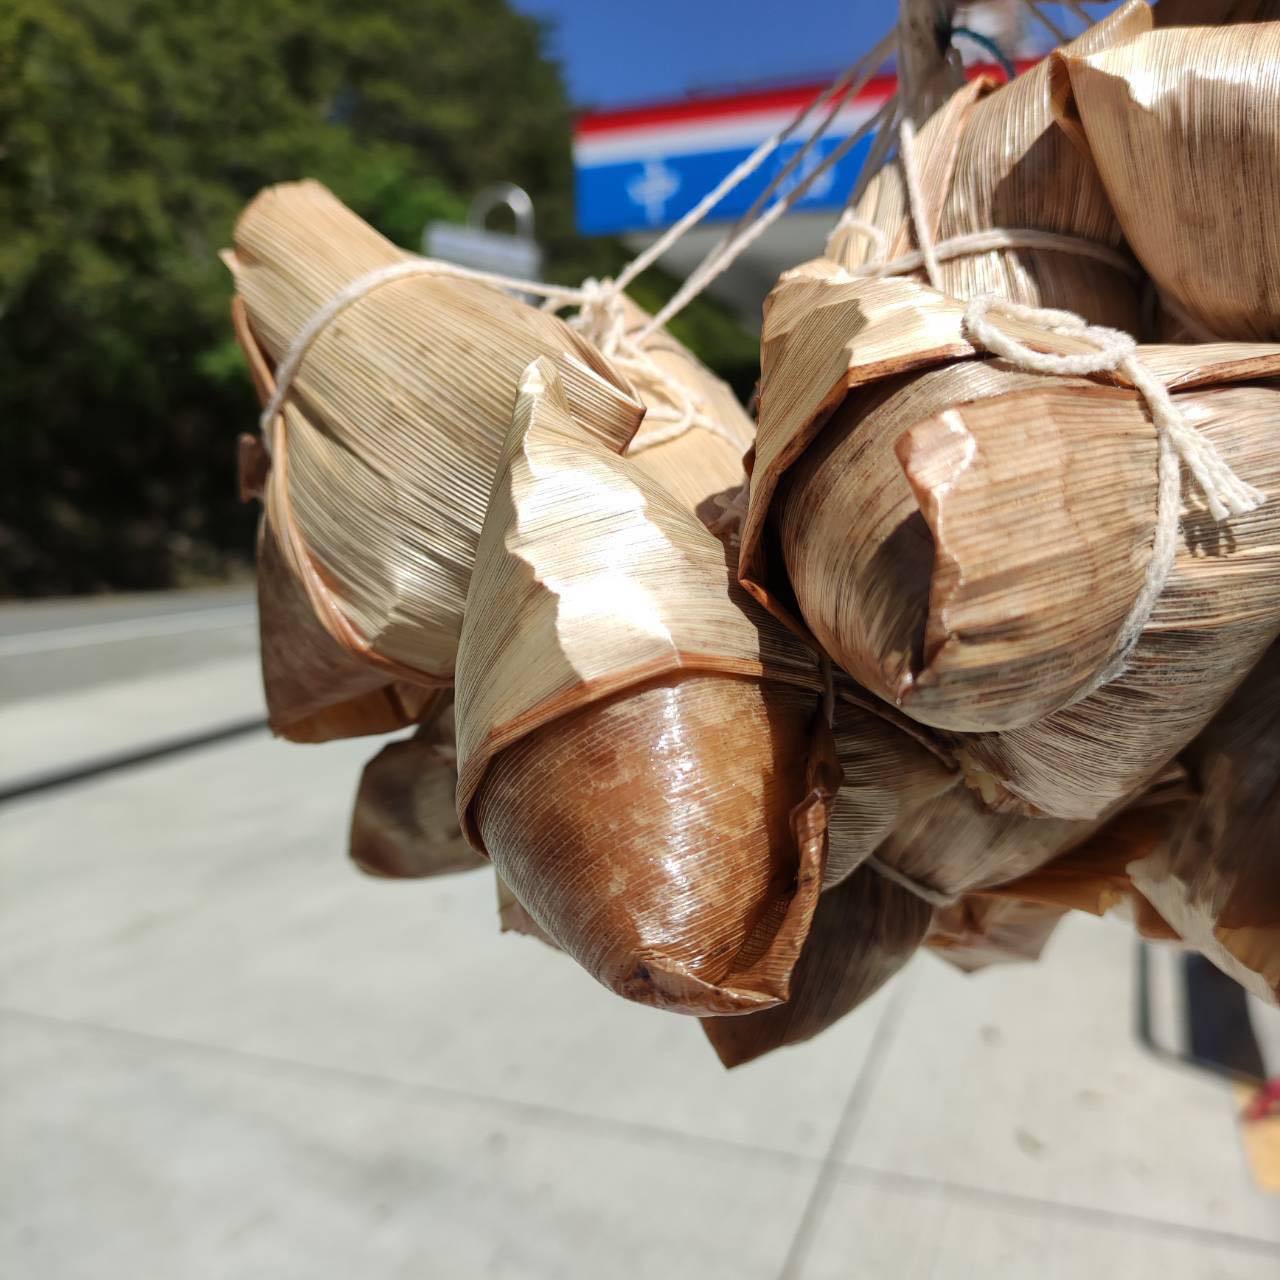 台湾中油公司关原加油站贩售的「云端肉粽」，目前已暂停贩售。图撷取自脸书粉专「中横路况交通资讯站」